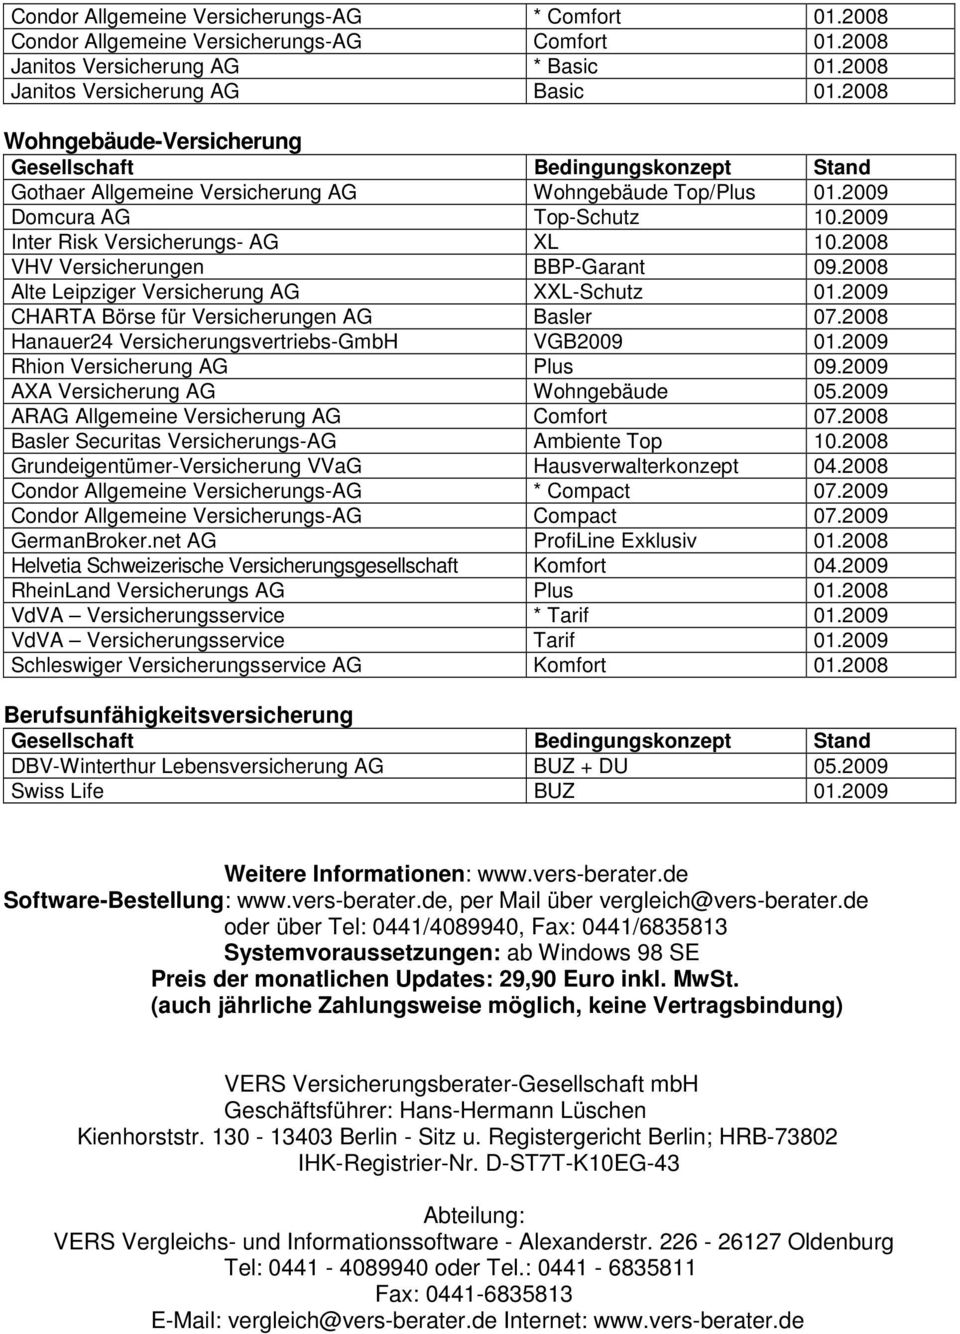 2008 Alte Leipziger Versicherung AG XXL-Schutz 01.2009 CHARTA Börse für Versicherungen AG Basler 07.2008 Hanauer24 Versicherungsvertriebs-GmbH VGB2009 01.2009 Rhion Versicherung AG Plus 09.